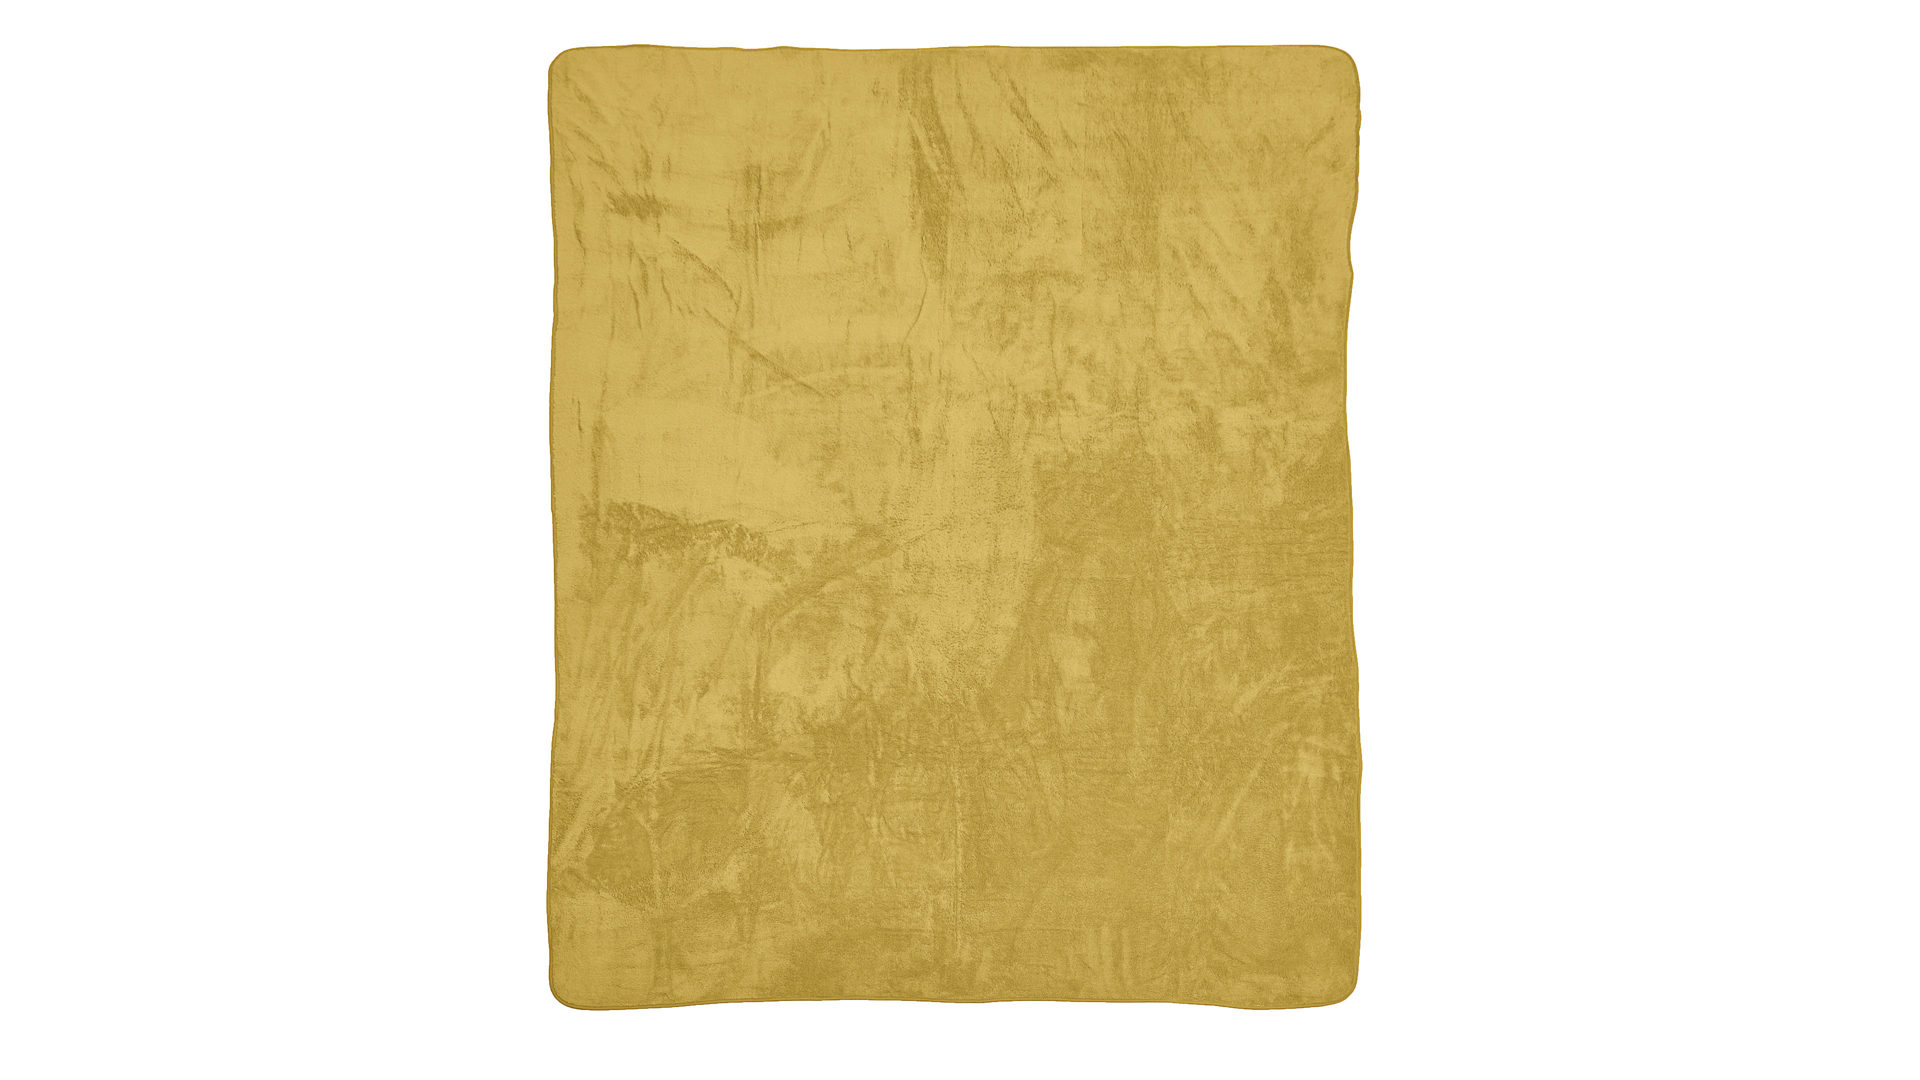 Wohndecke Done® by karabel home company aus Stoff in Gelb DONE® Wohndecke Blanket Softie goldfarbener Teddystoff – ca. 150 x 200 cm